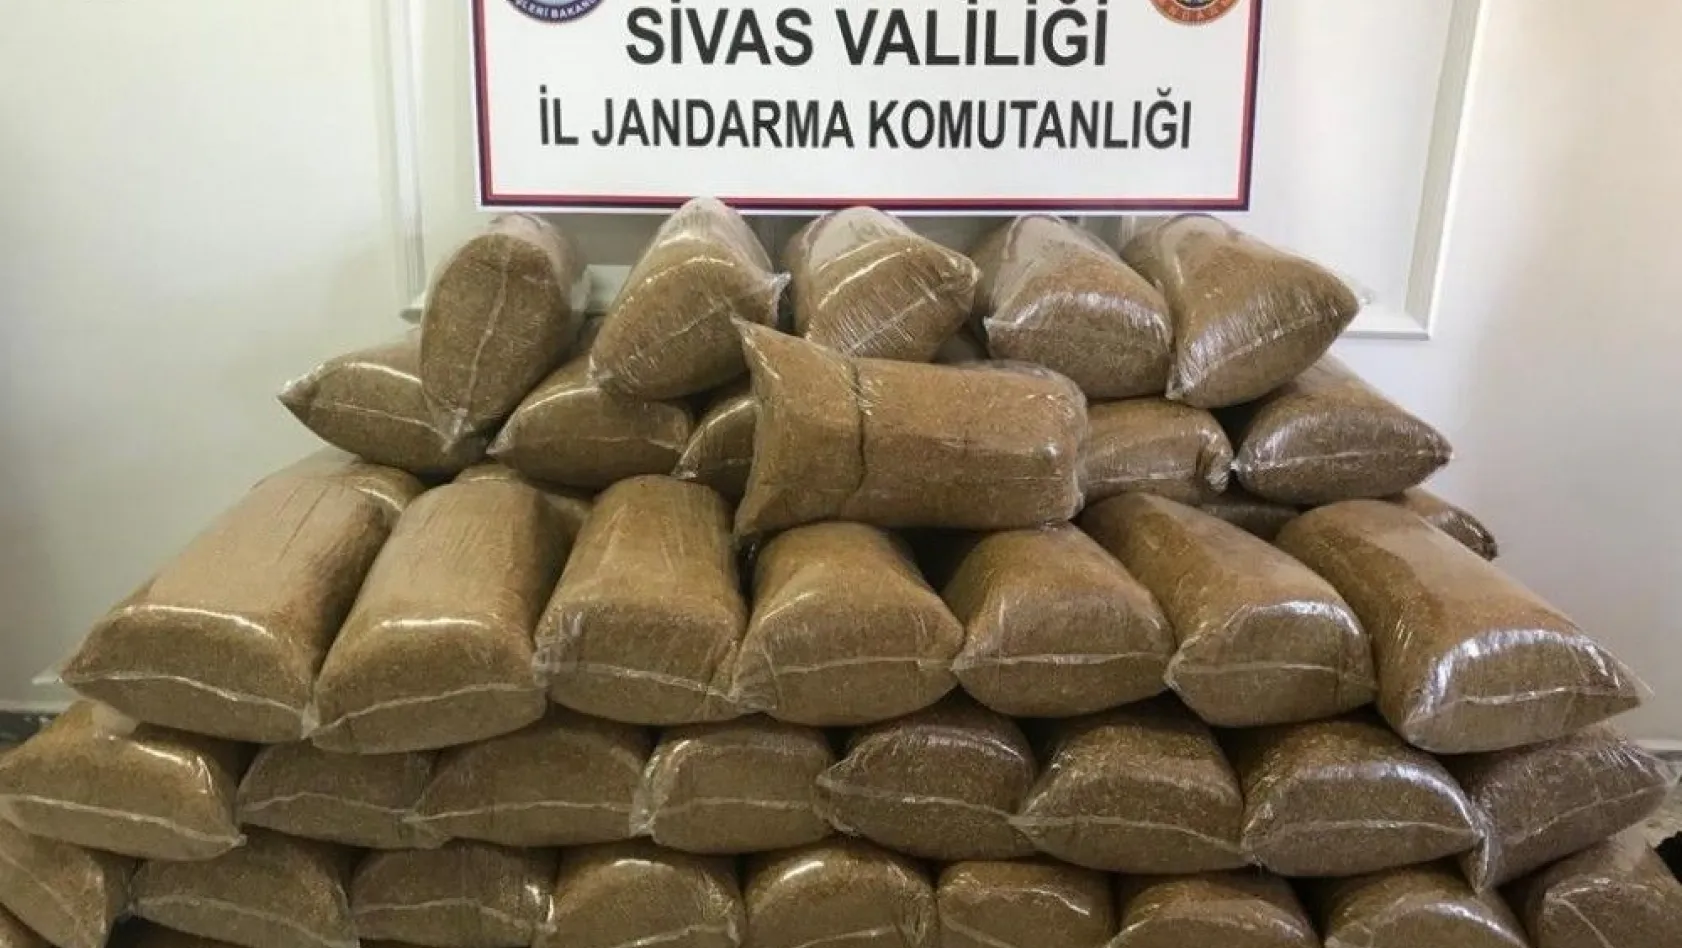 Sivas'ta 492 kilo tütün ele geçirildi
